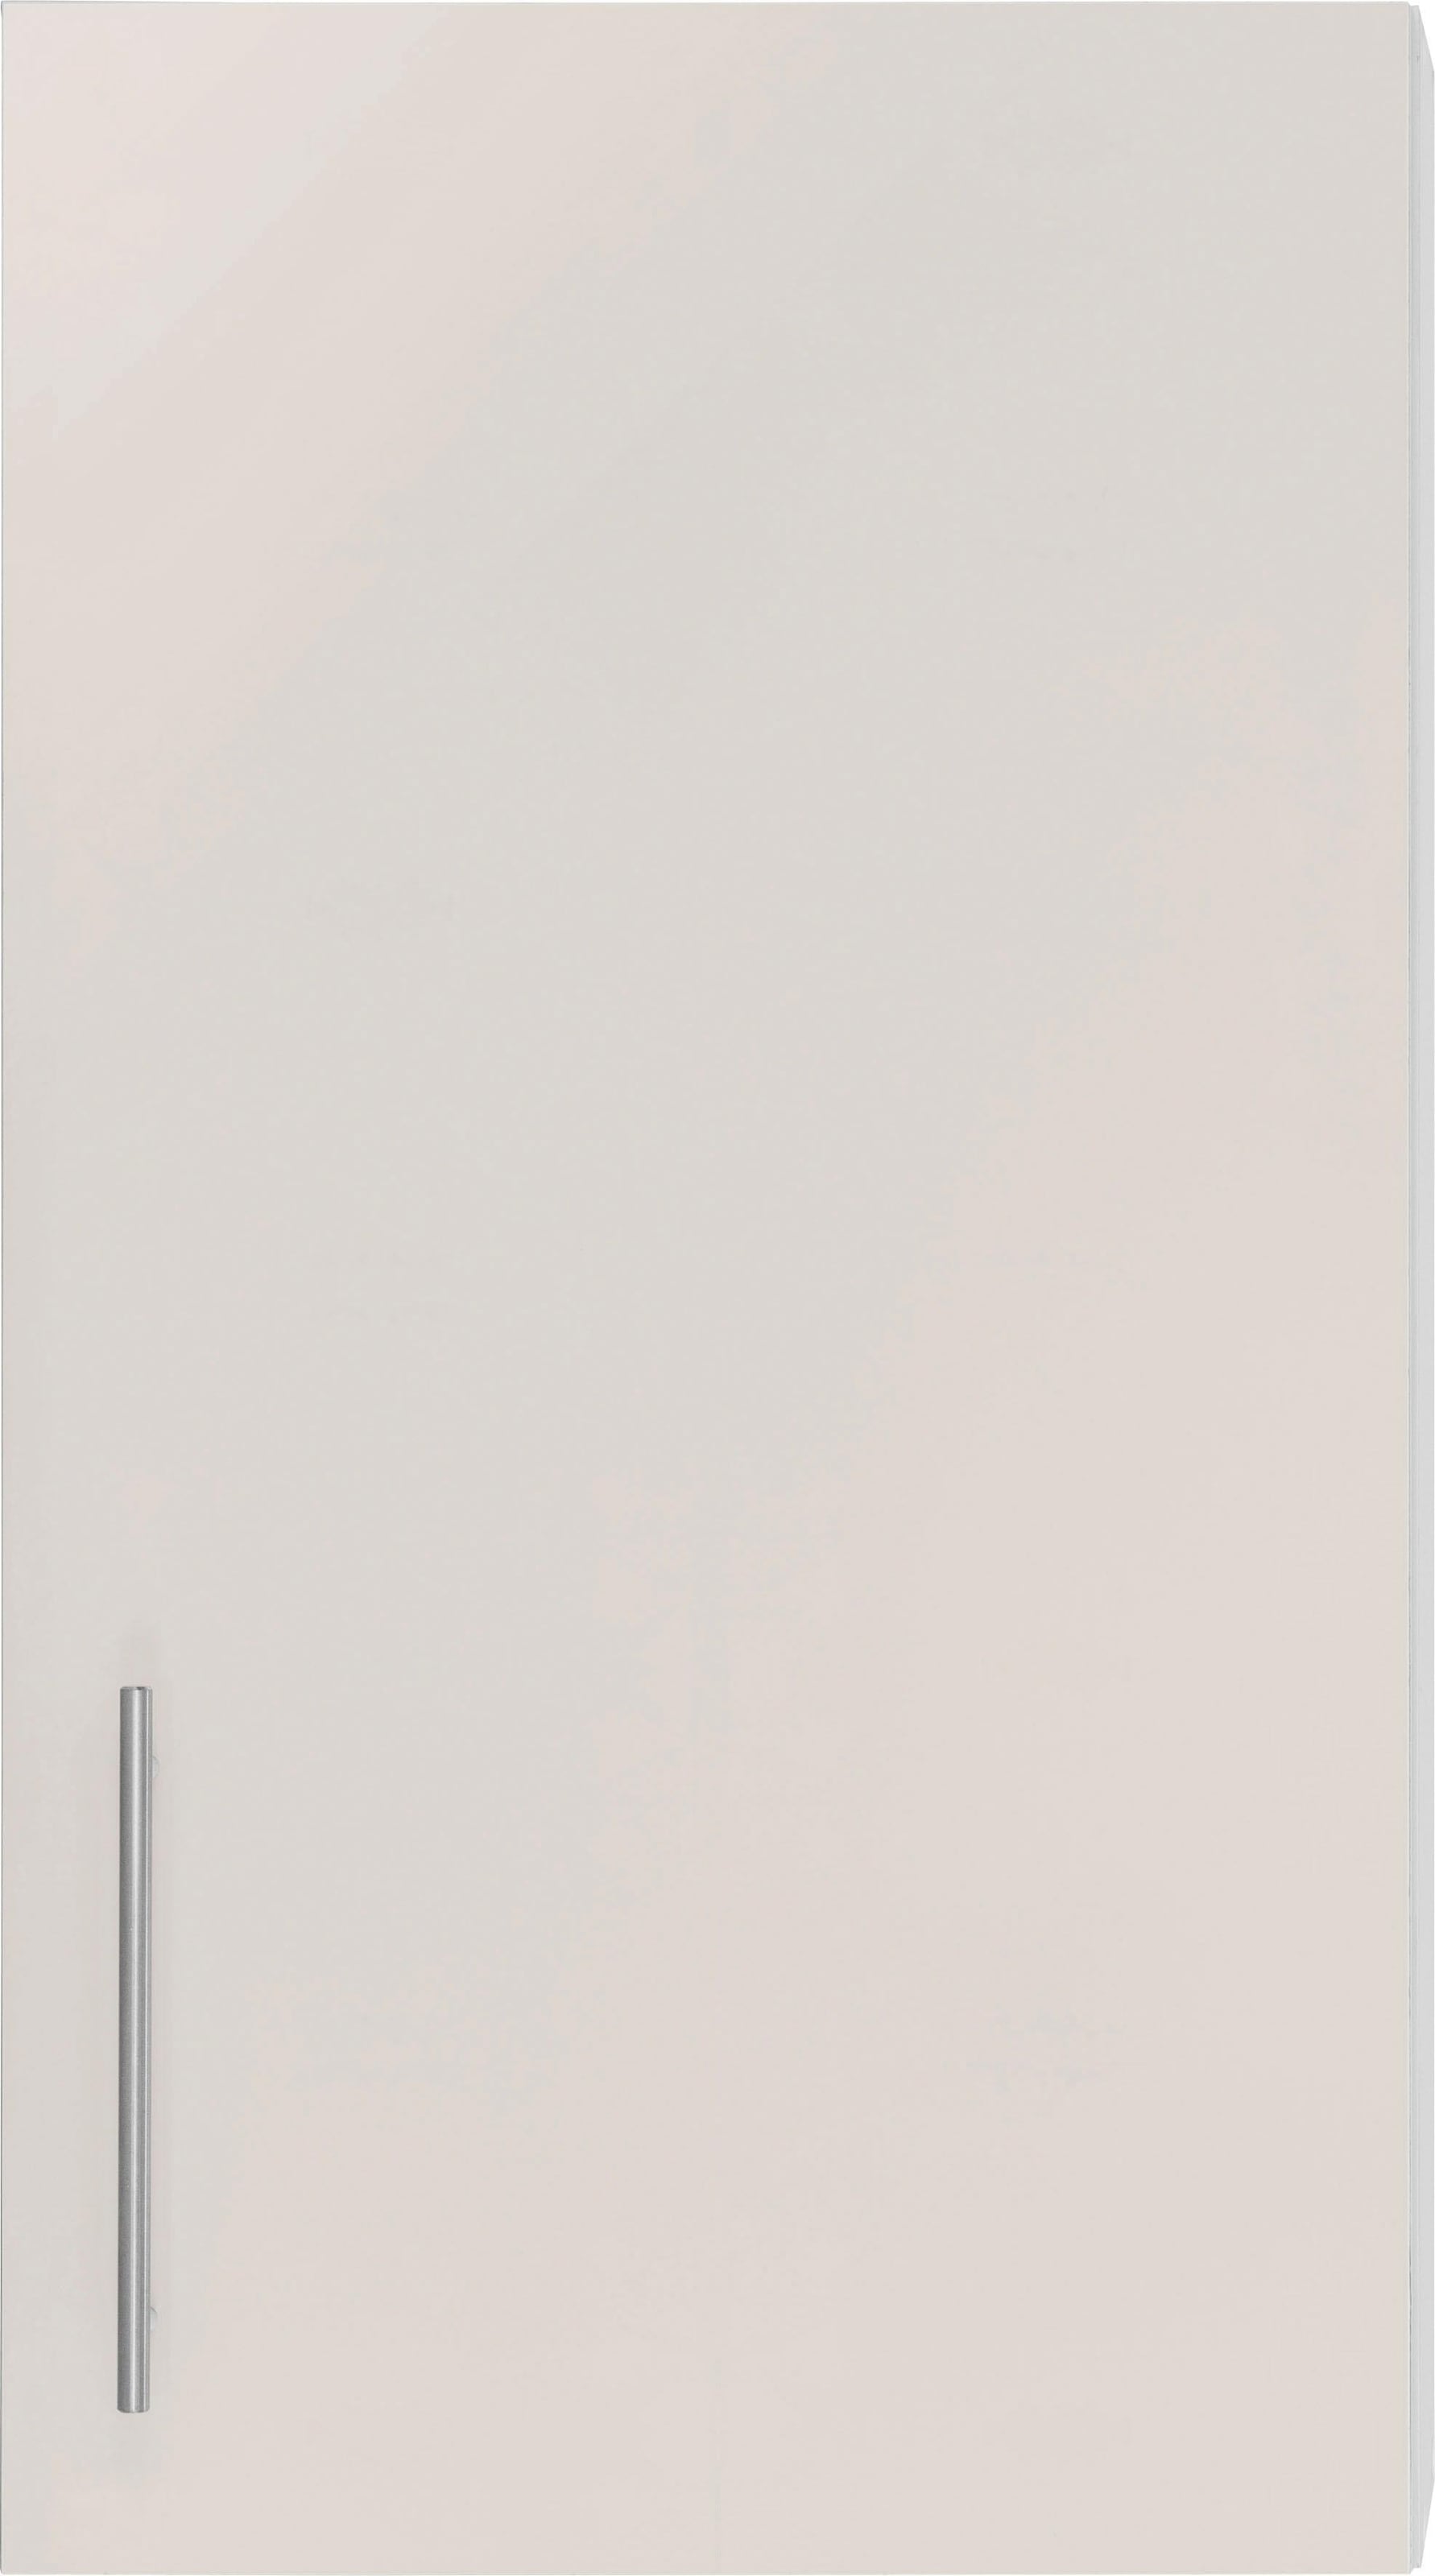 wiho Küchen Hängeschrank »Cali«, 50 cm breit, 90 cm hoch im OTTO Online Shop